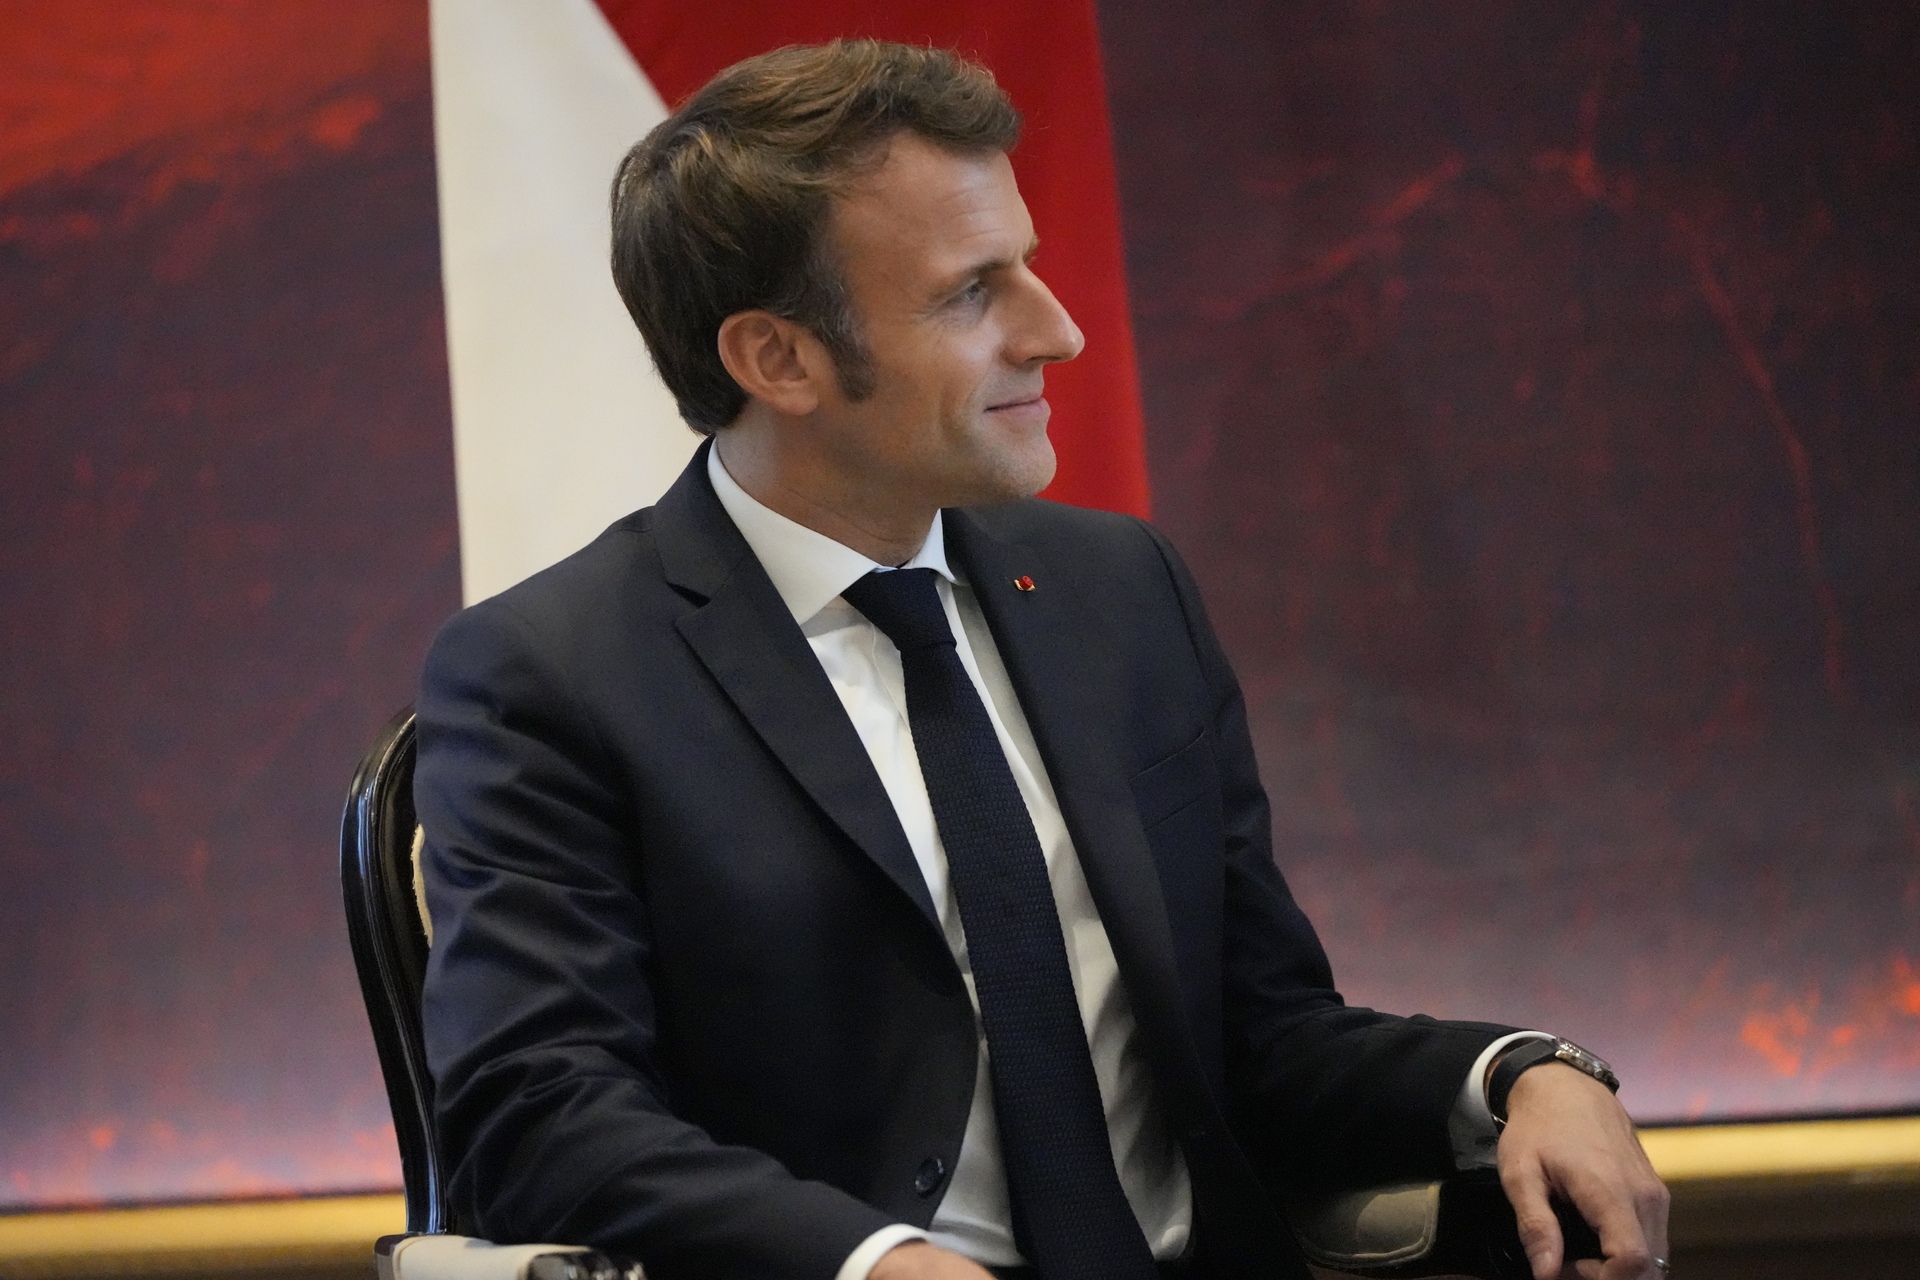 Macron ve en el G20 'un momento importante' para hablar de la guerra